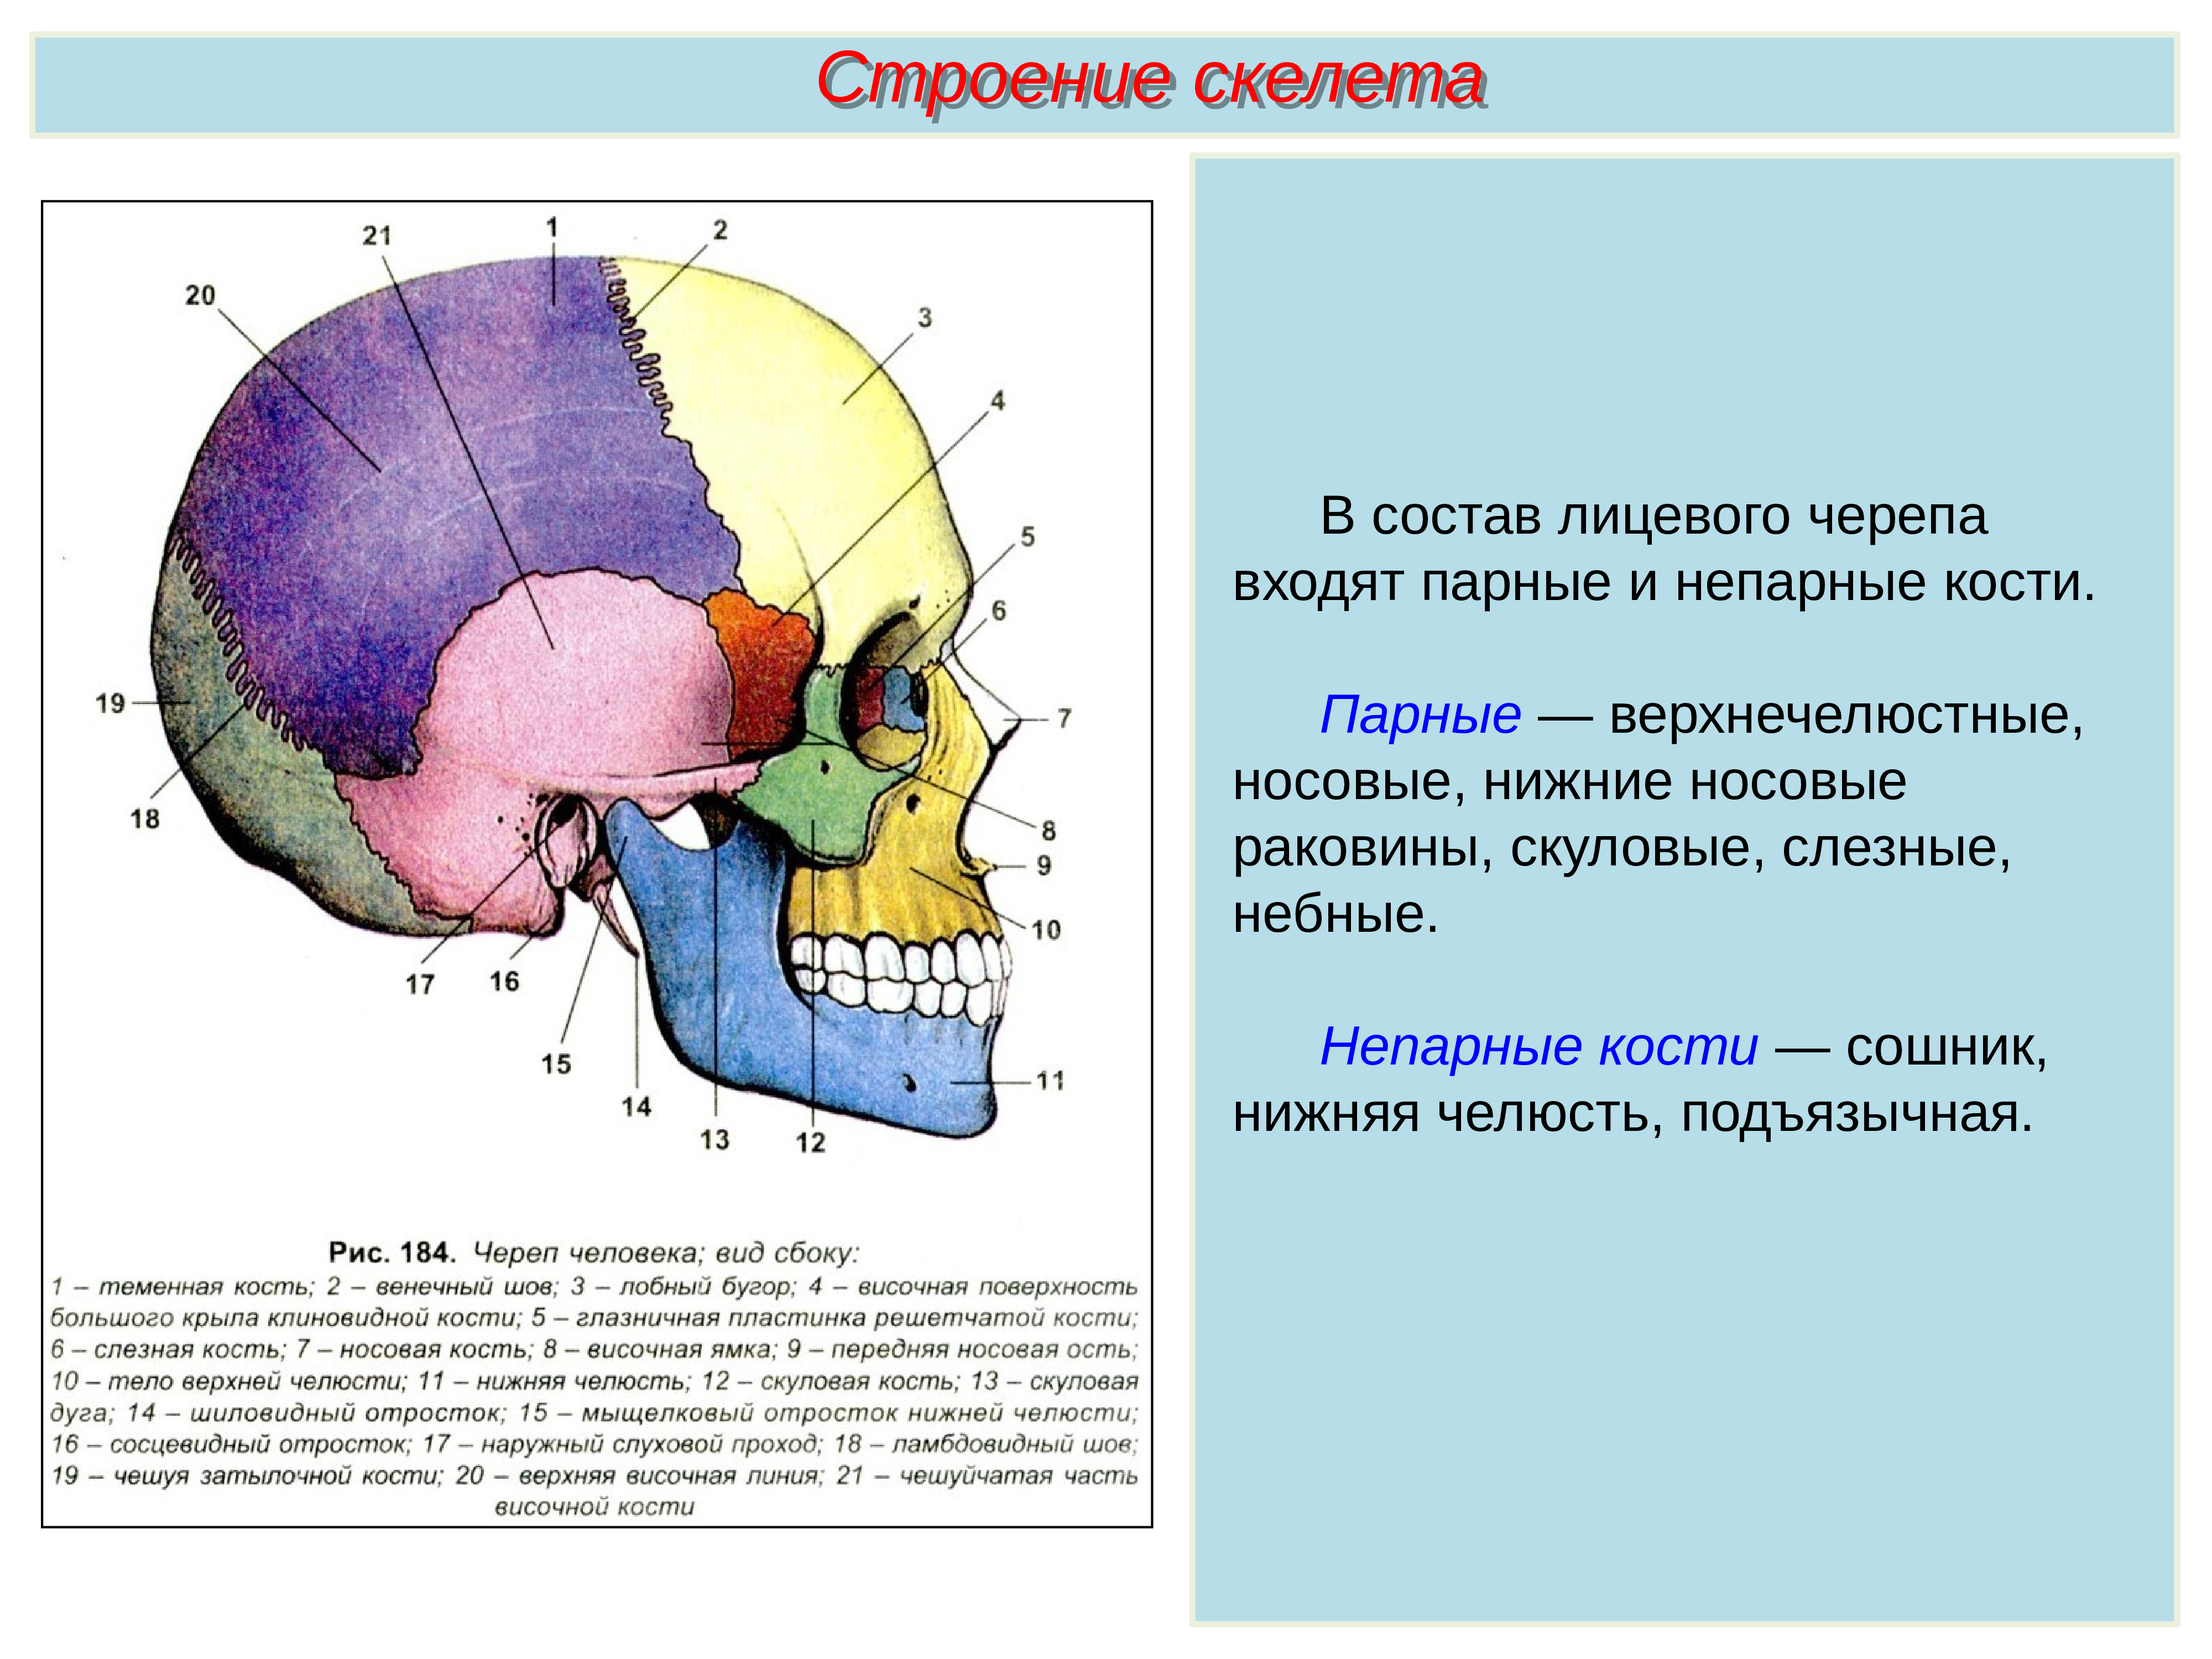 Скелет головы особенности строения. Парные и непарные кости лицевого отдела черепа. Лицевой отдел черепа кости сошник. Непарные кости лицевого отдела черепа. Парные и непарные кости мозгового отдела черепа.